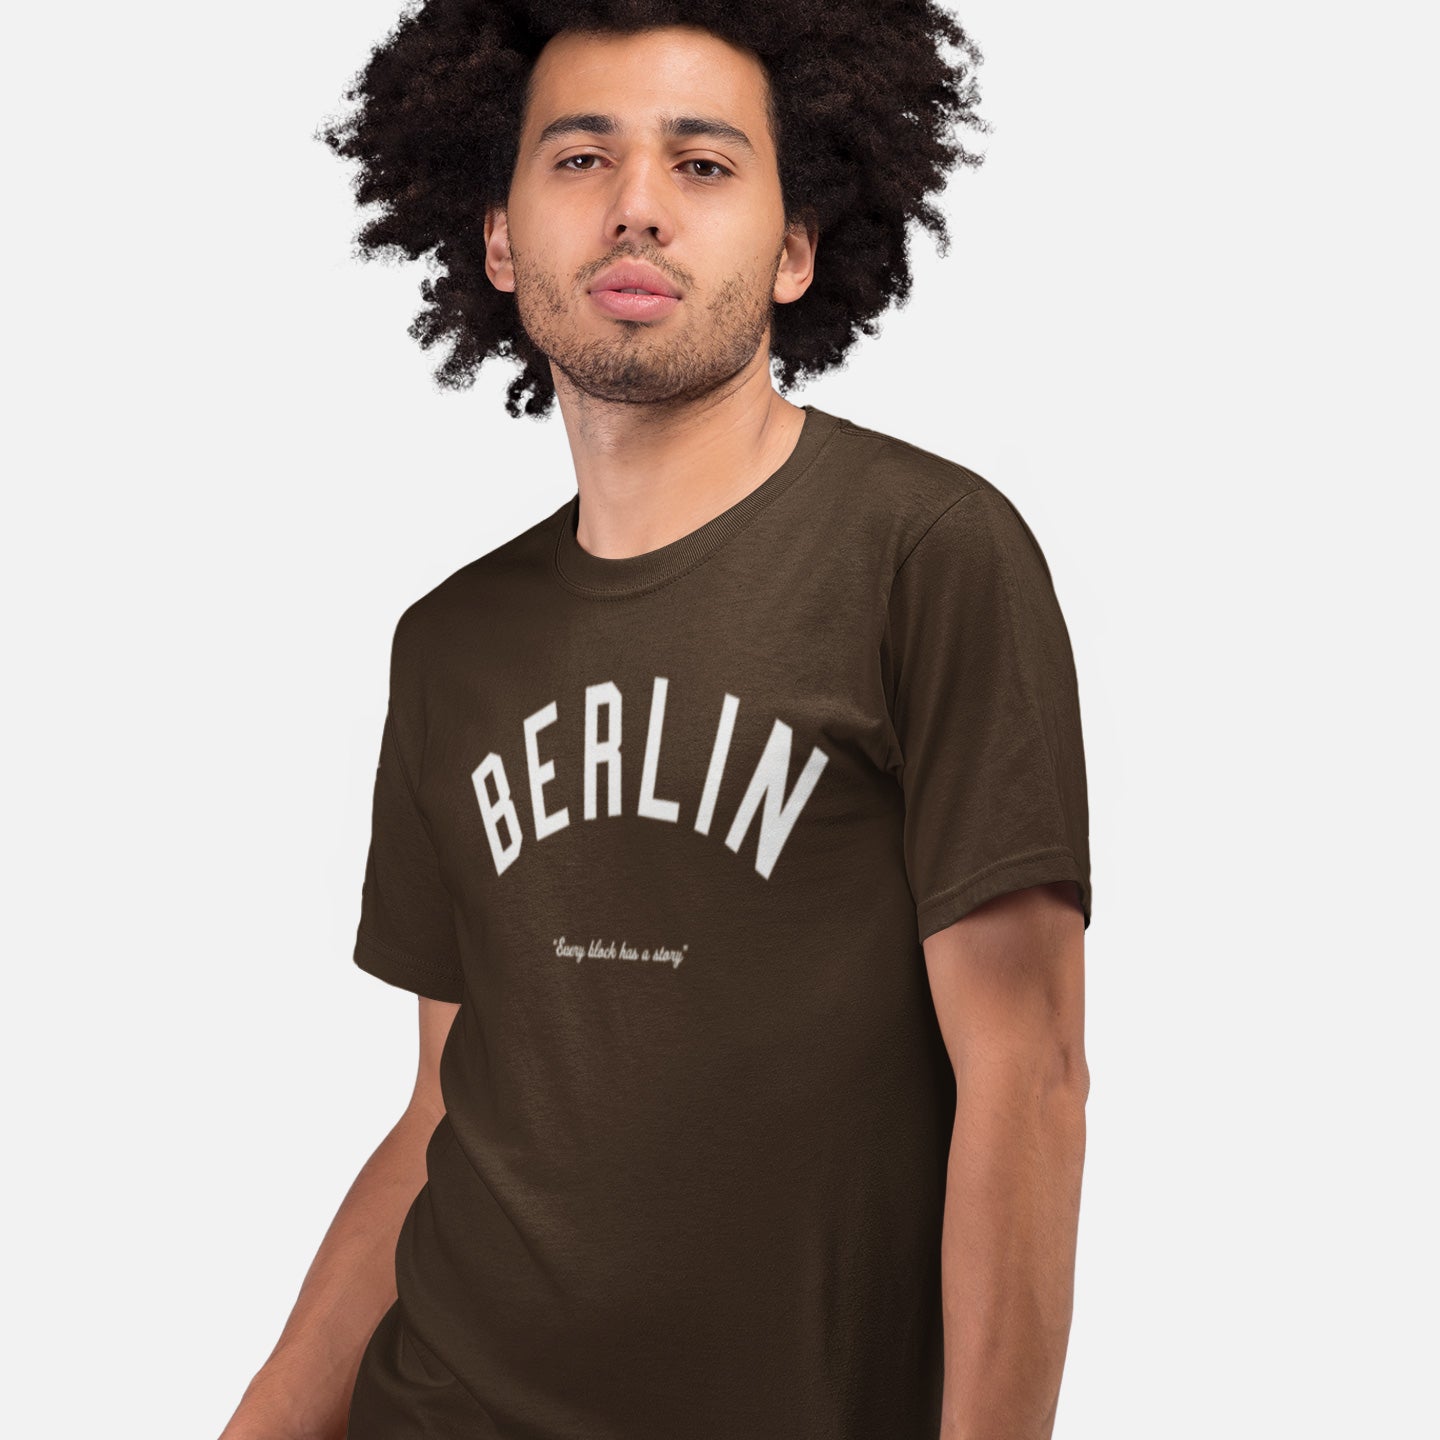 Berlin Story T-shirt